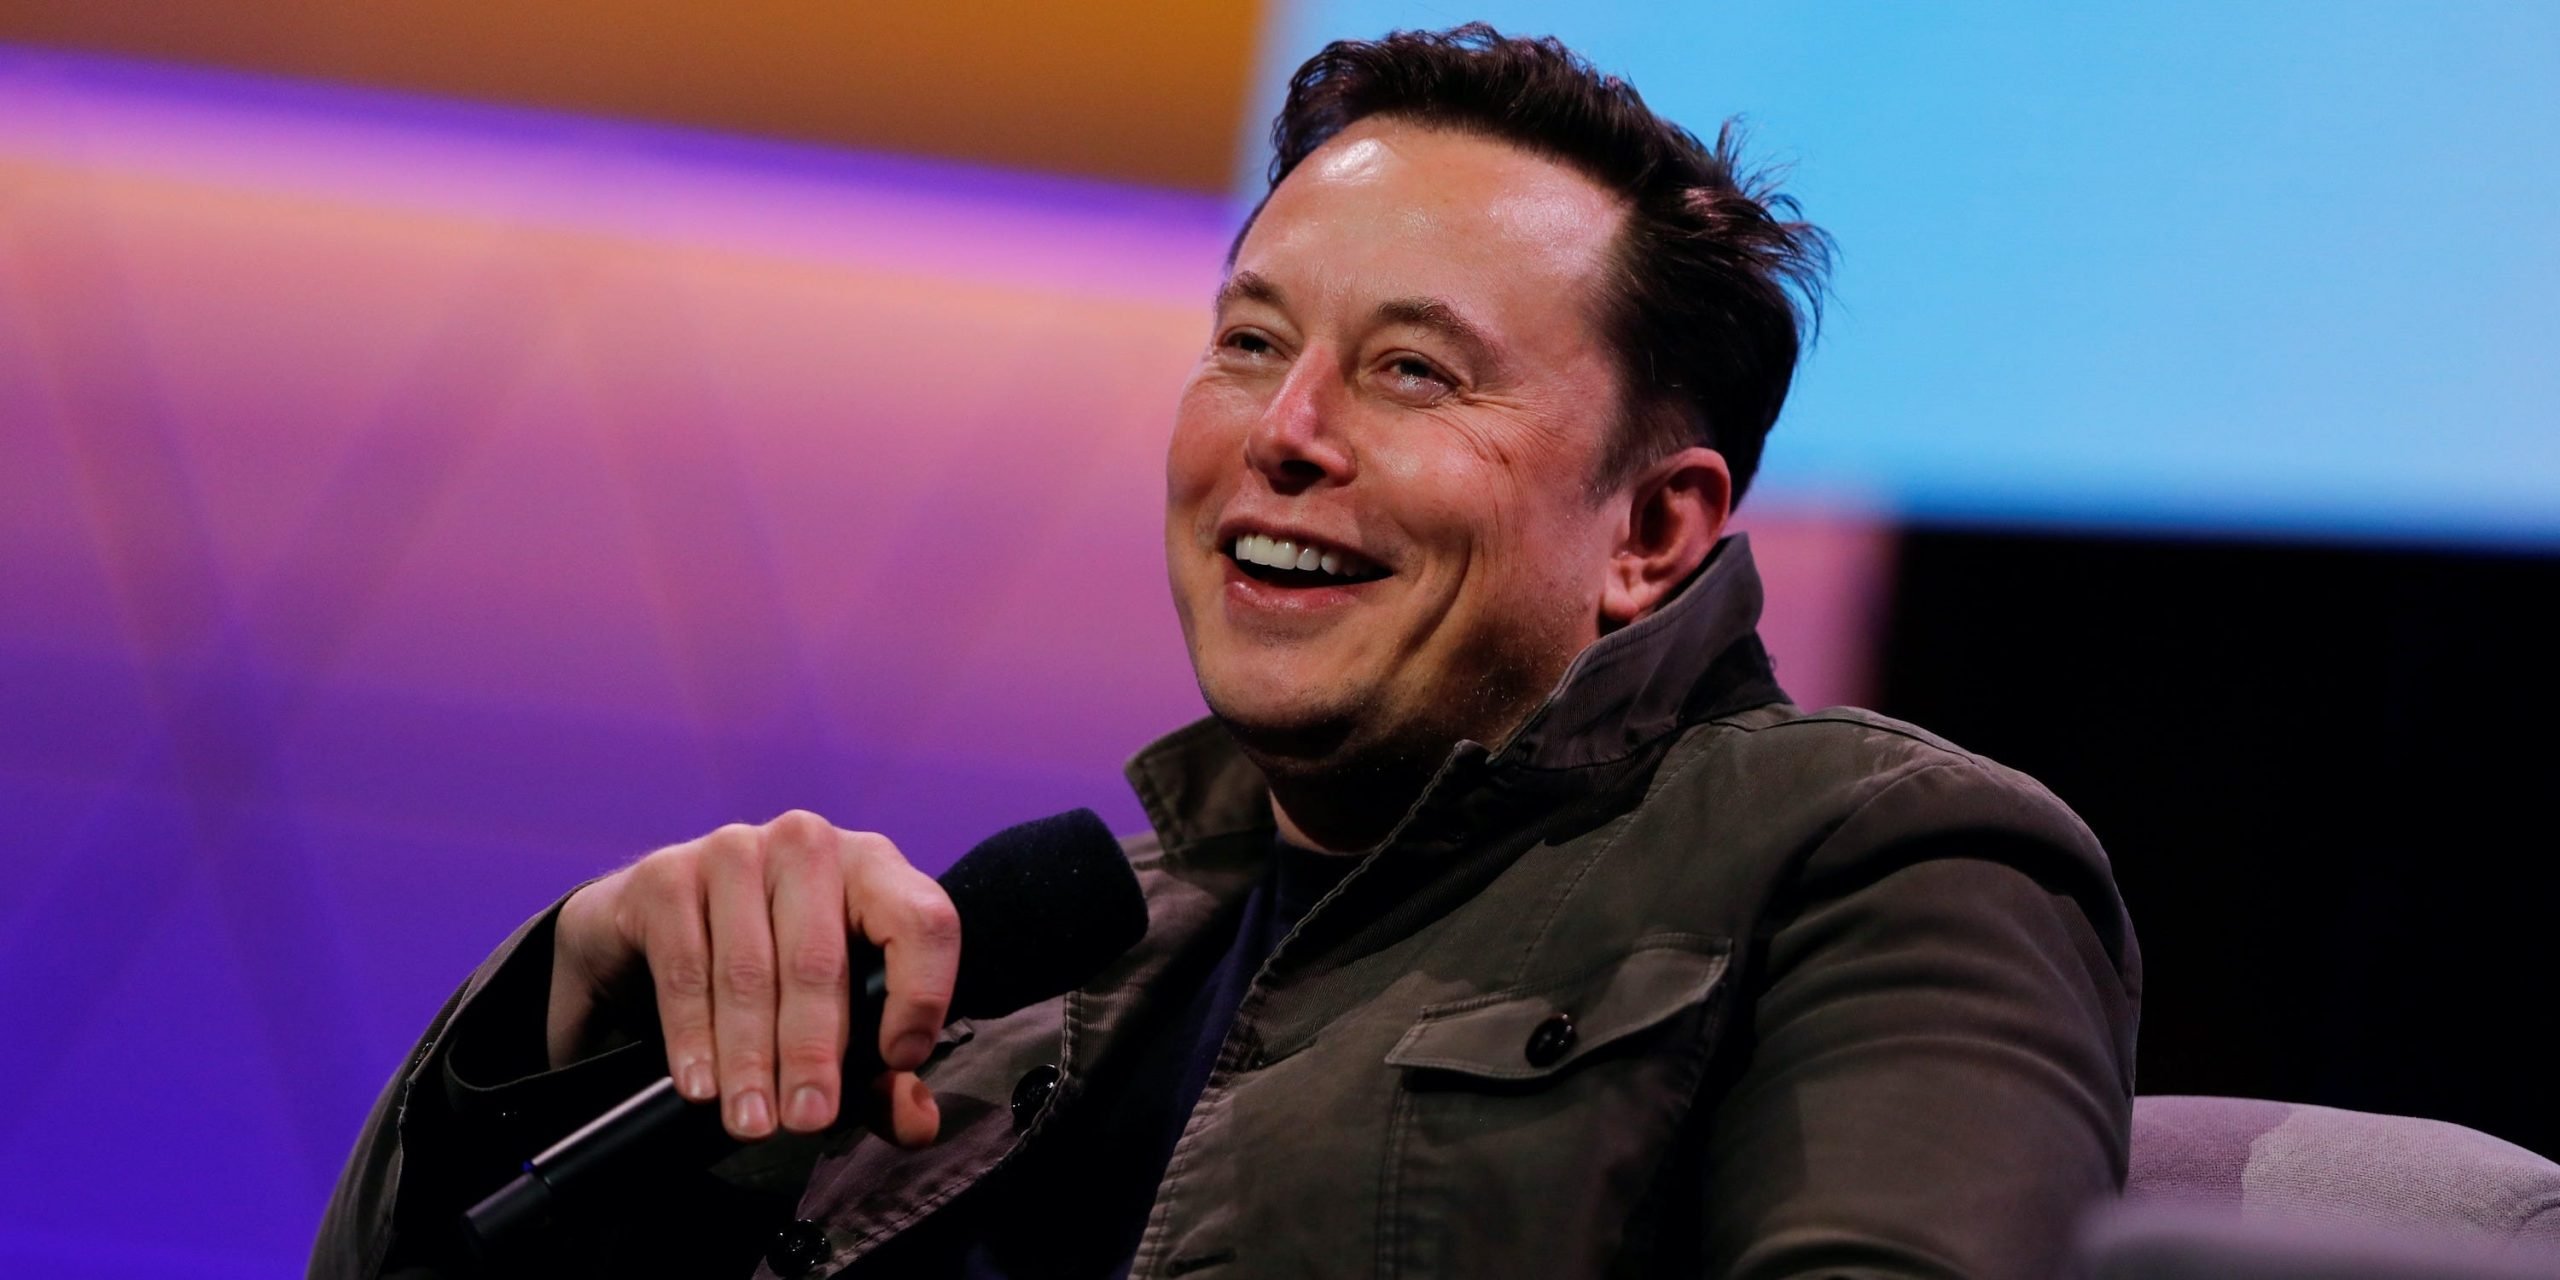 Elon Musk, topman van onder meer de maker van elektrische auto's Tesla en SpaceX, kan zich sinds maandag rijker noemen dan Microsoft-oprichter en weldoener Bill Gates.